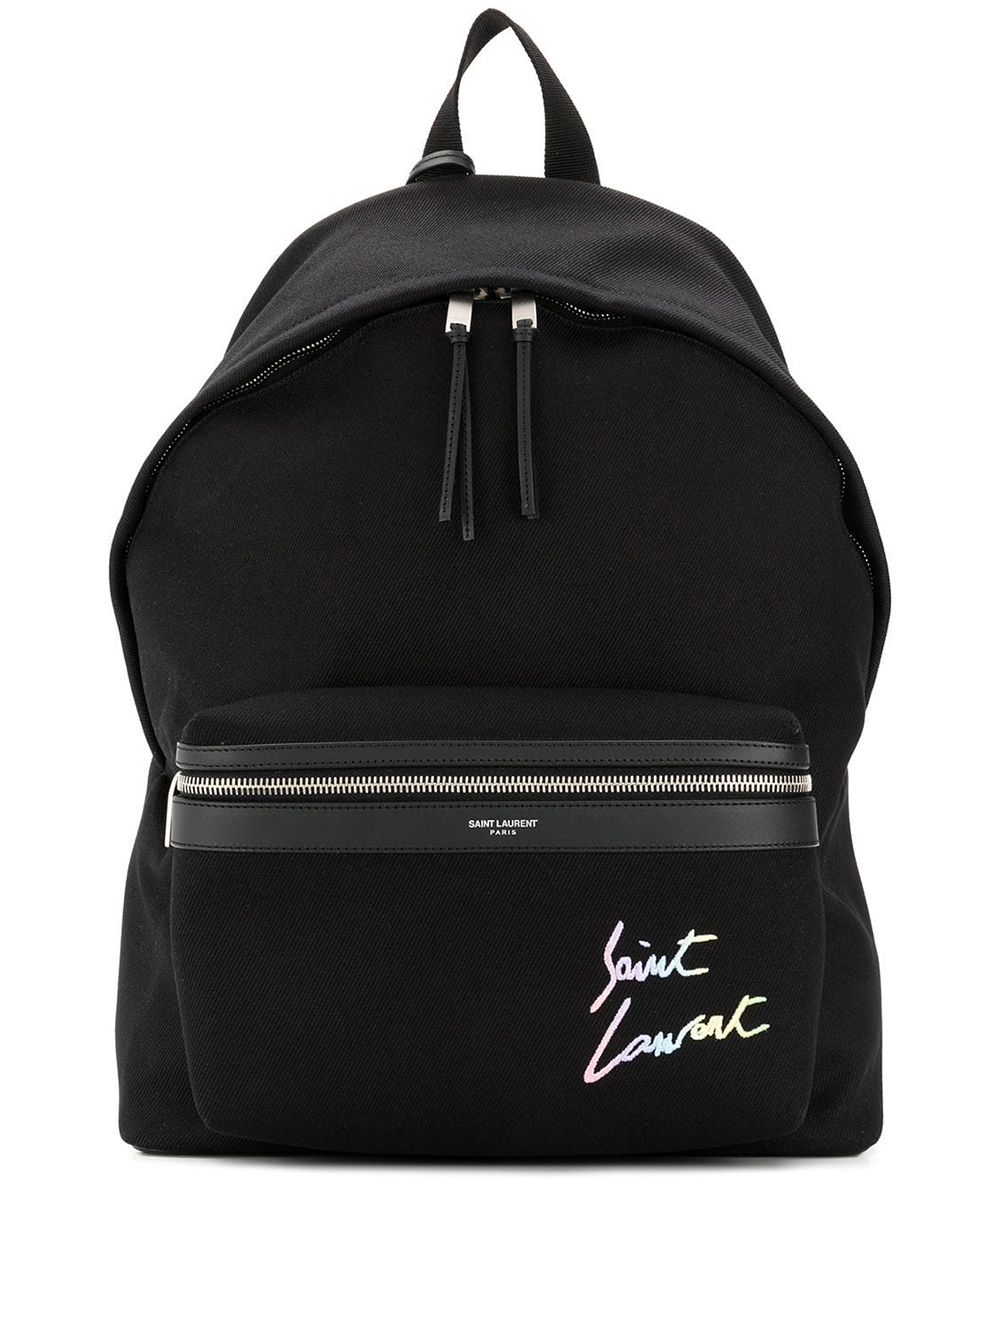 фото Saint laurent рюкзак с вышивкой логотипа